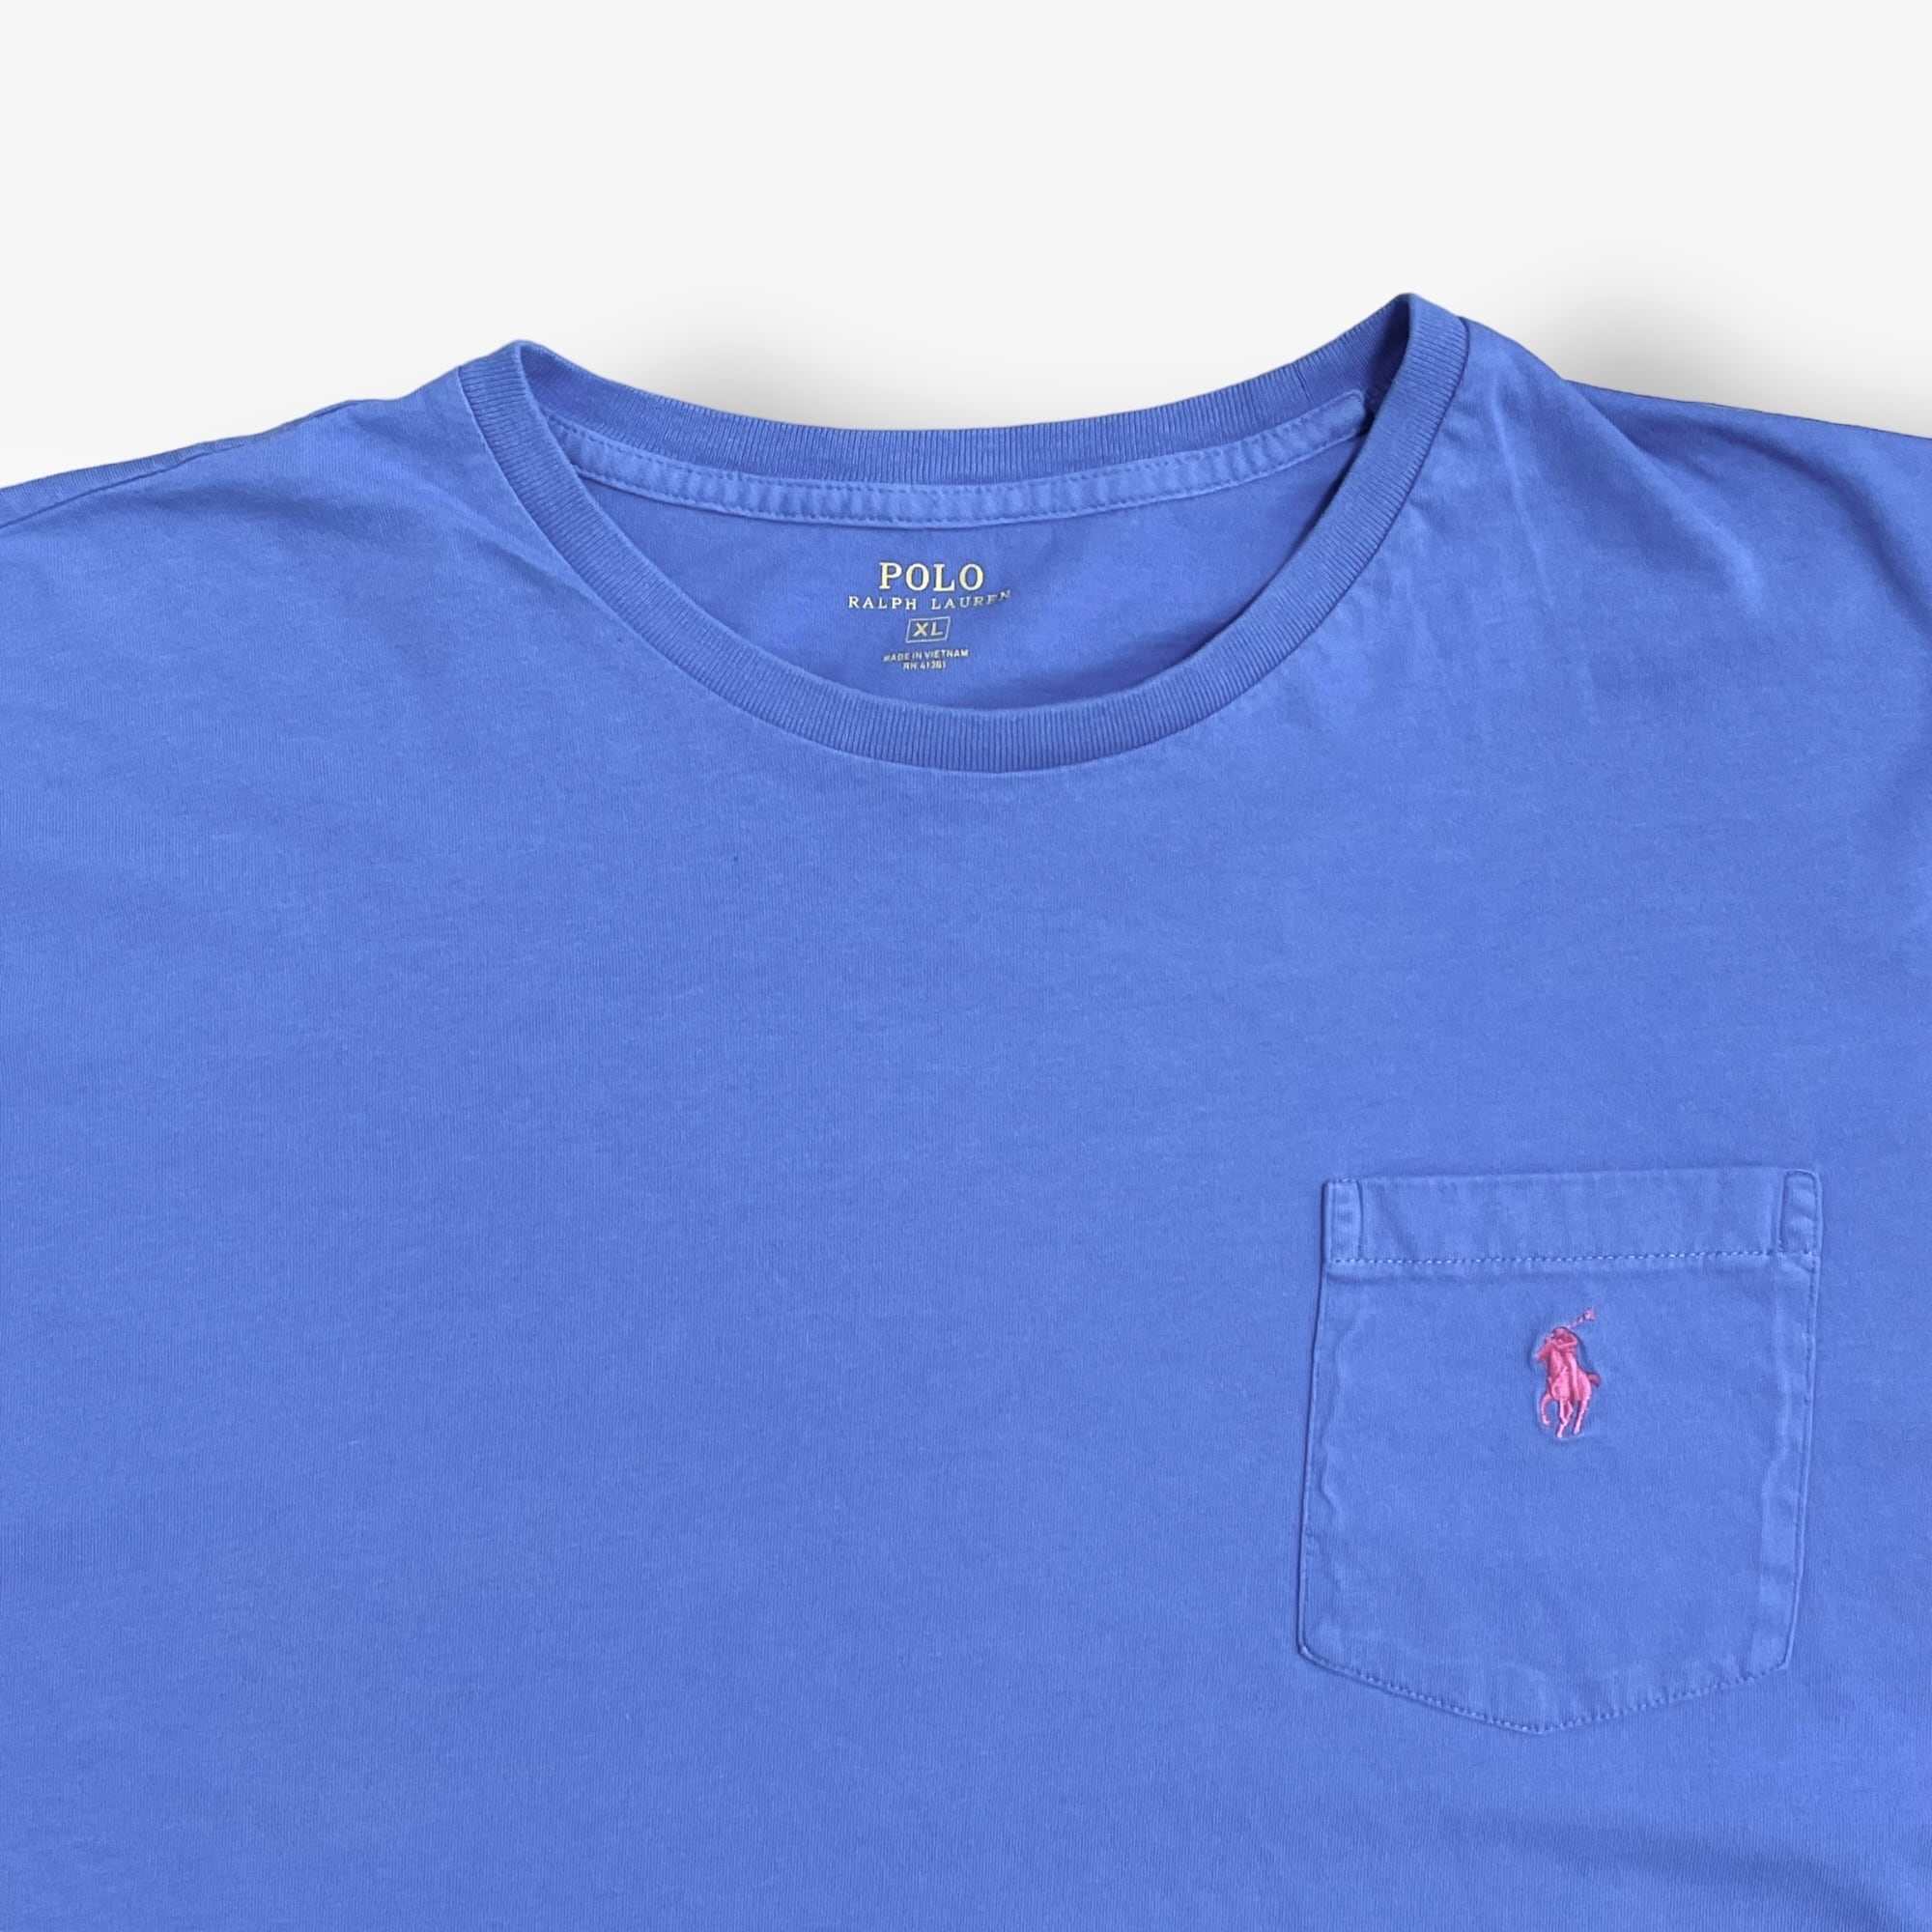 POLO RALPH LAUREN】XL ビッグシルエット ポケットTシャツ 刺繍ロゴ ...